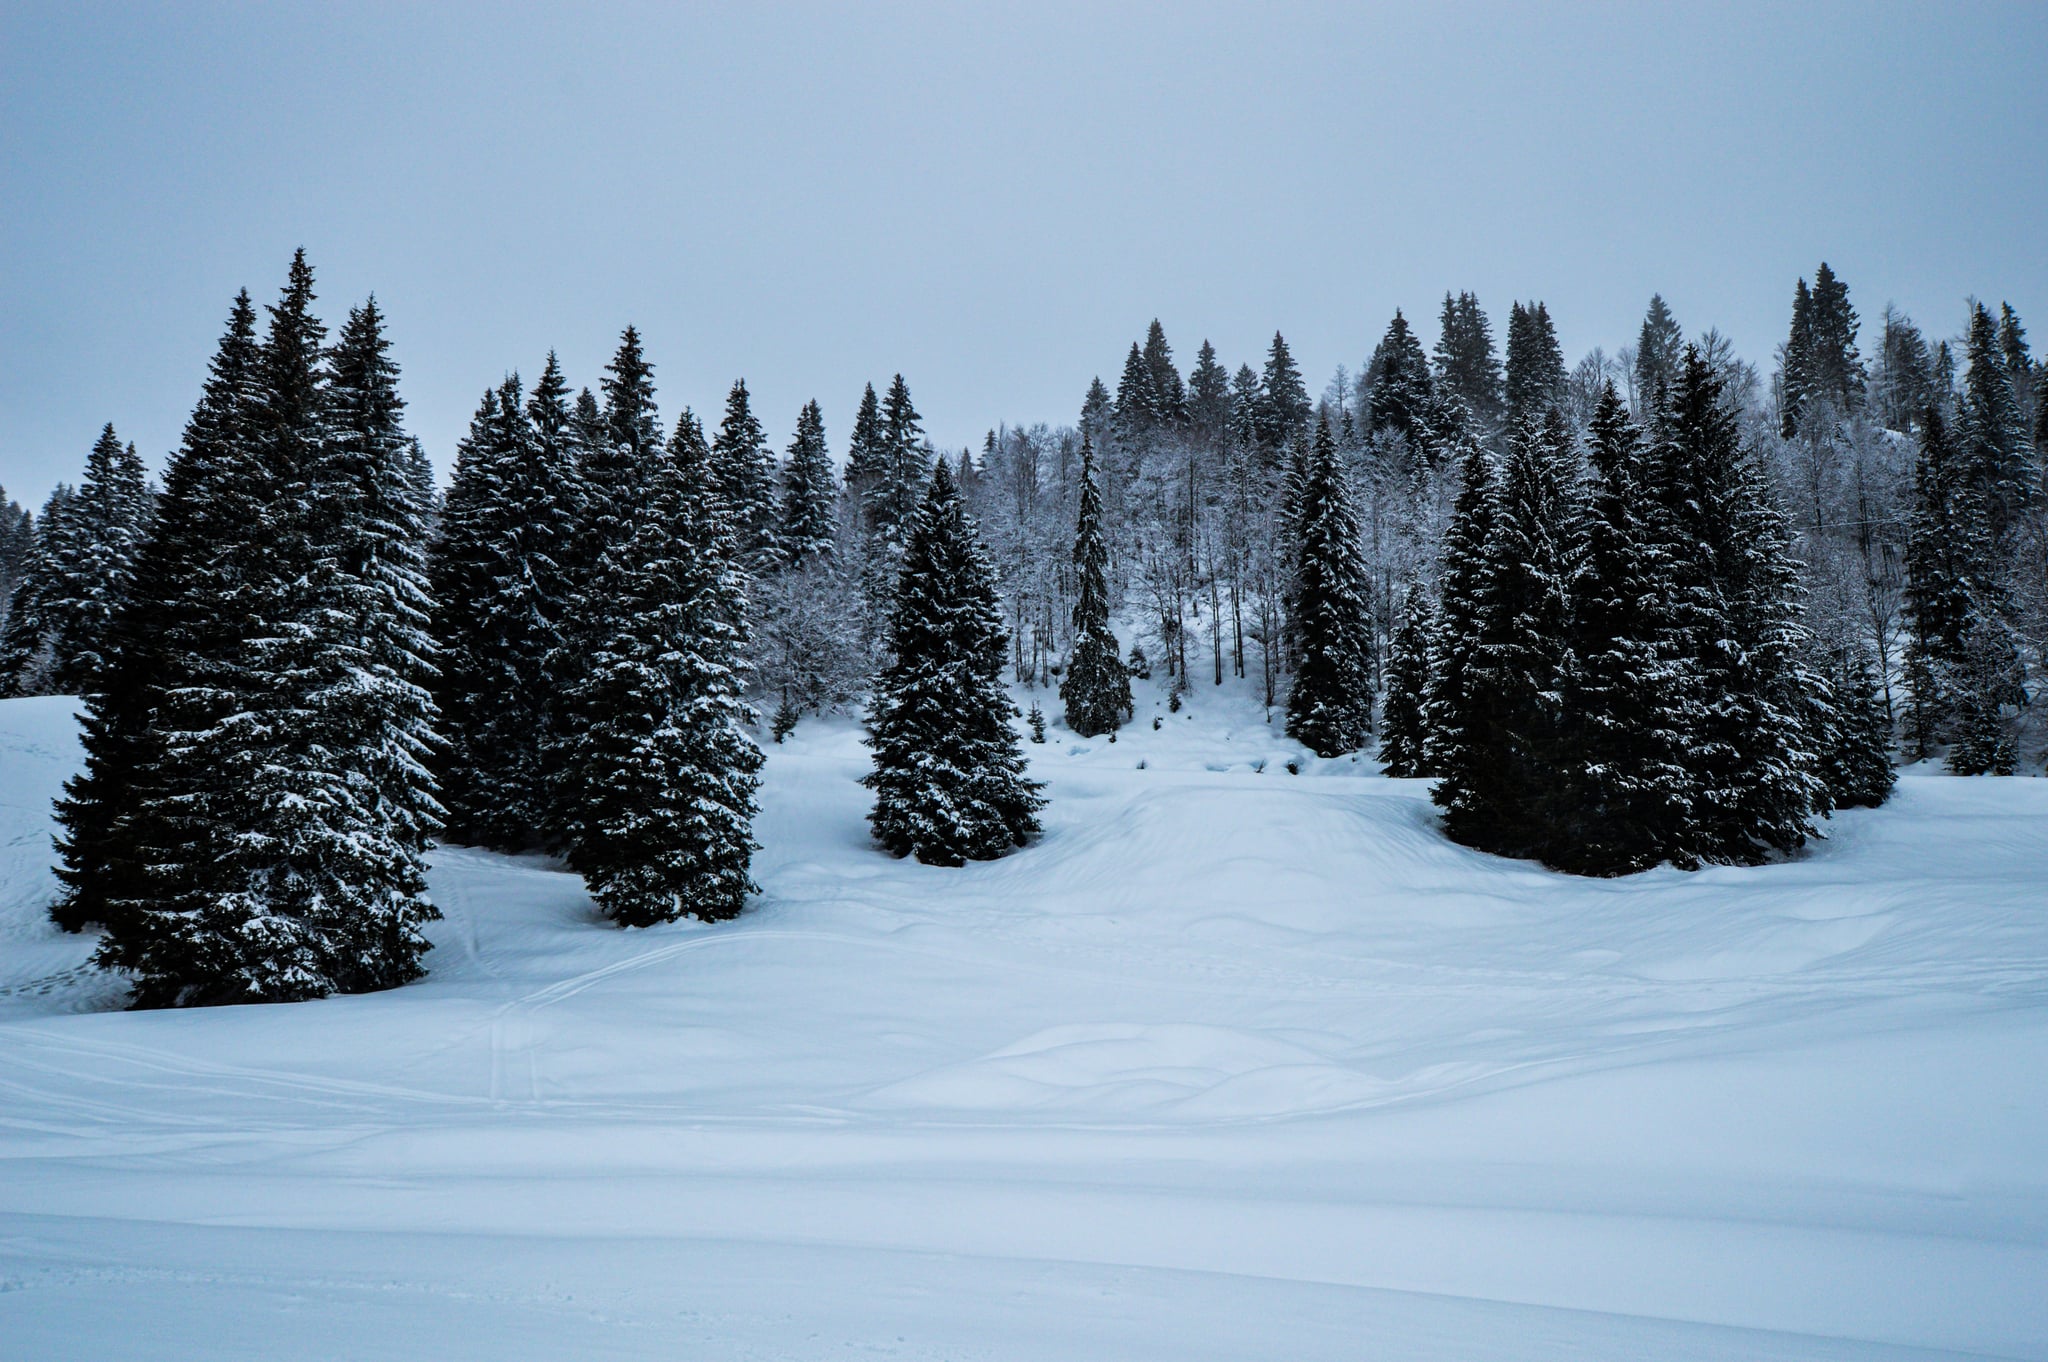 Cây phủ tuyết (Snow-Covered Trees): Các cây phủ tuyết đang khoe sắc trong không gian trắng xóa tuyệt đẹp. Đây là một cảnh tượng không thể bỏ lỡ trong những ngày đông lạnh giá. Hãy cùng đón xem những căn bức ảnh này nhé.